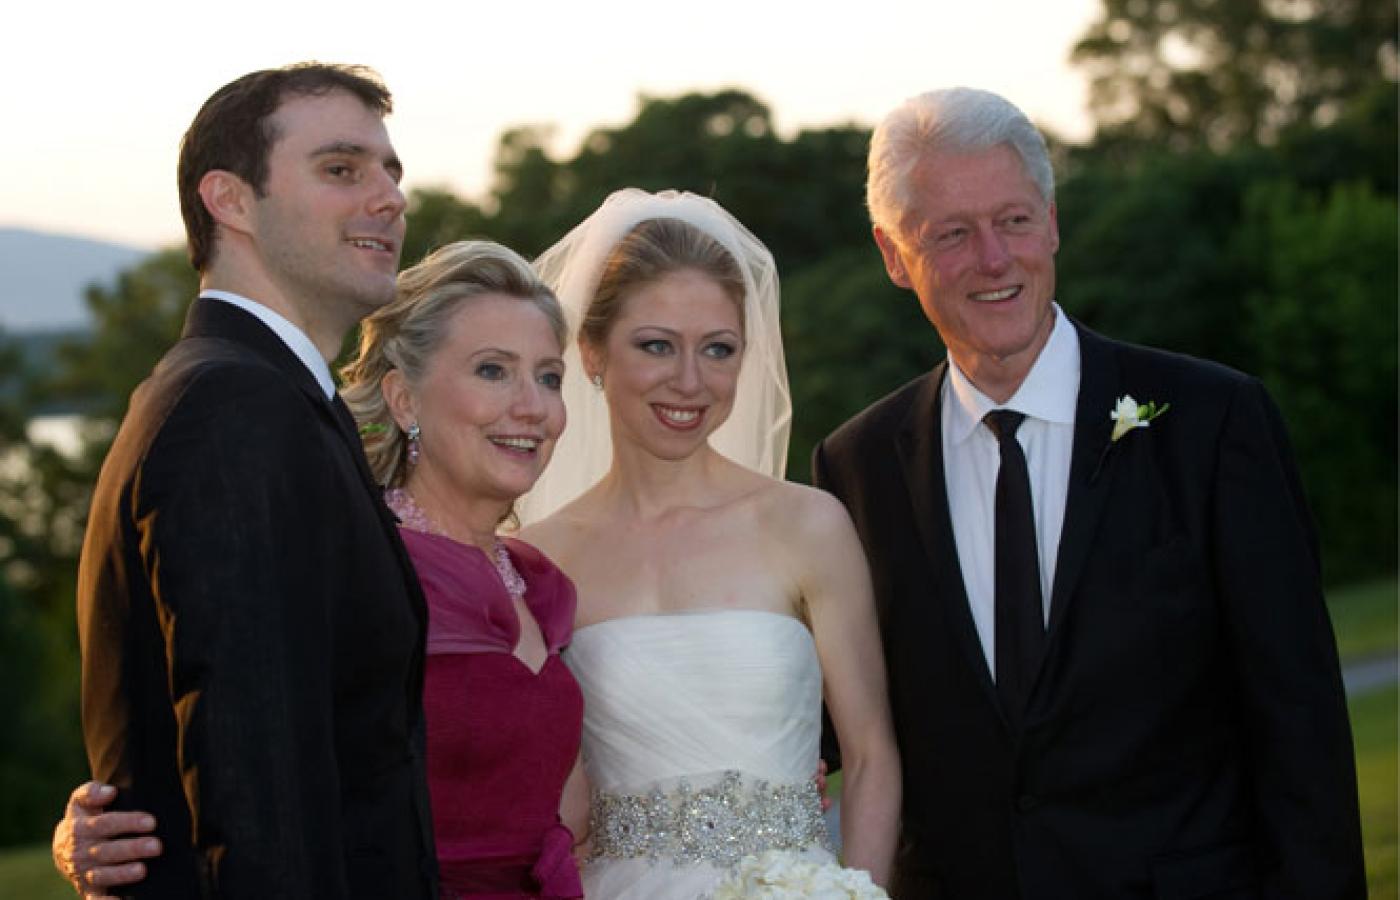 Ślub Chelsea Clinton z młodym bankierem kosztował 2 mln dol. Dla prasy tylko oficjalne zdjęcia.